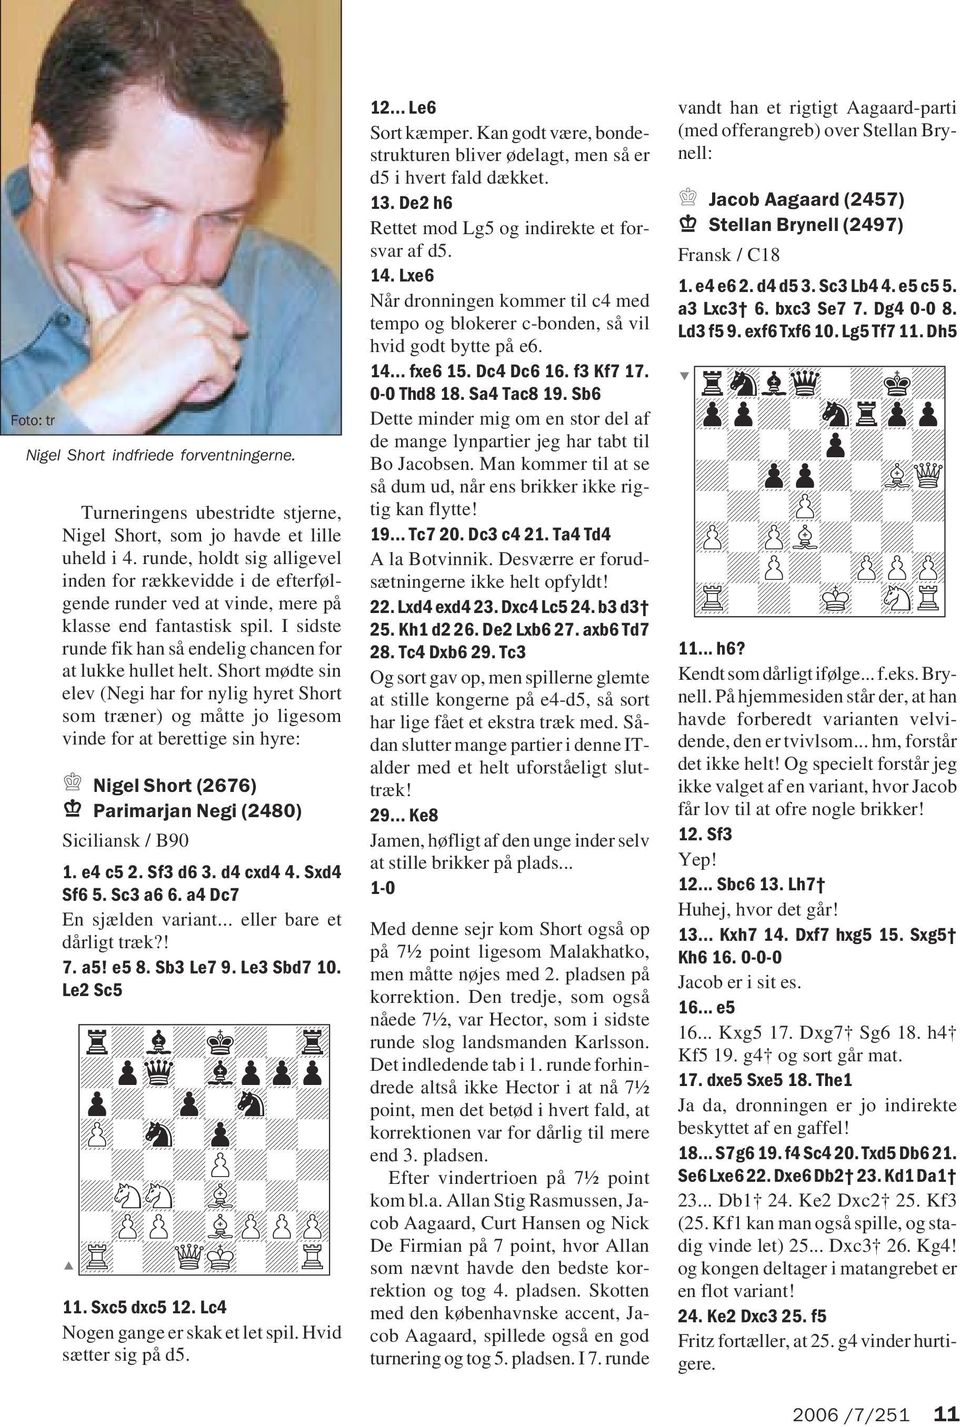 Short mødte sin elev (Negi har for nylig hyret Short som træner) og måtte jo ligesom vinde for at berettige sin hyre: Nigel Short (2676) Parimarjan Negi (2480) Siciliansk / B90 1. e4 c5 2. Sf3 d6 3.